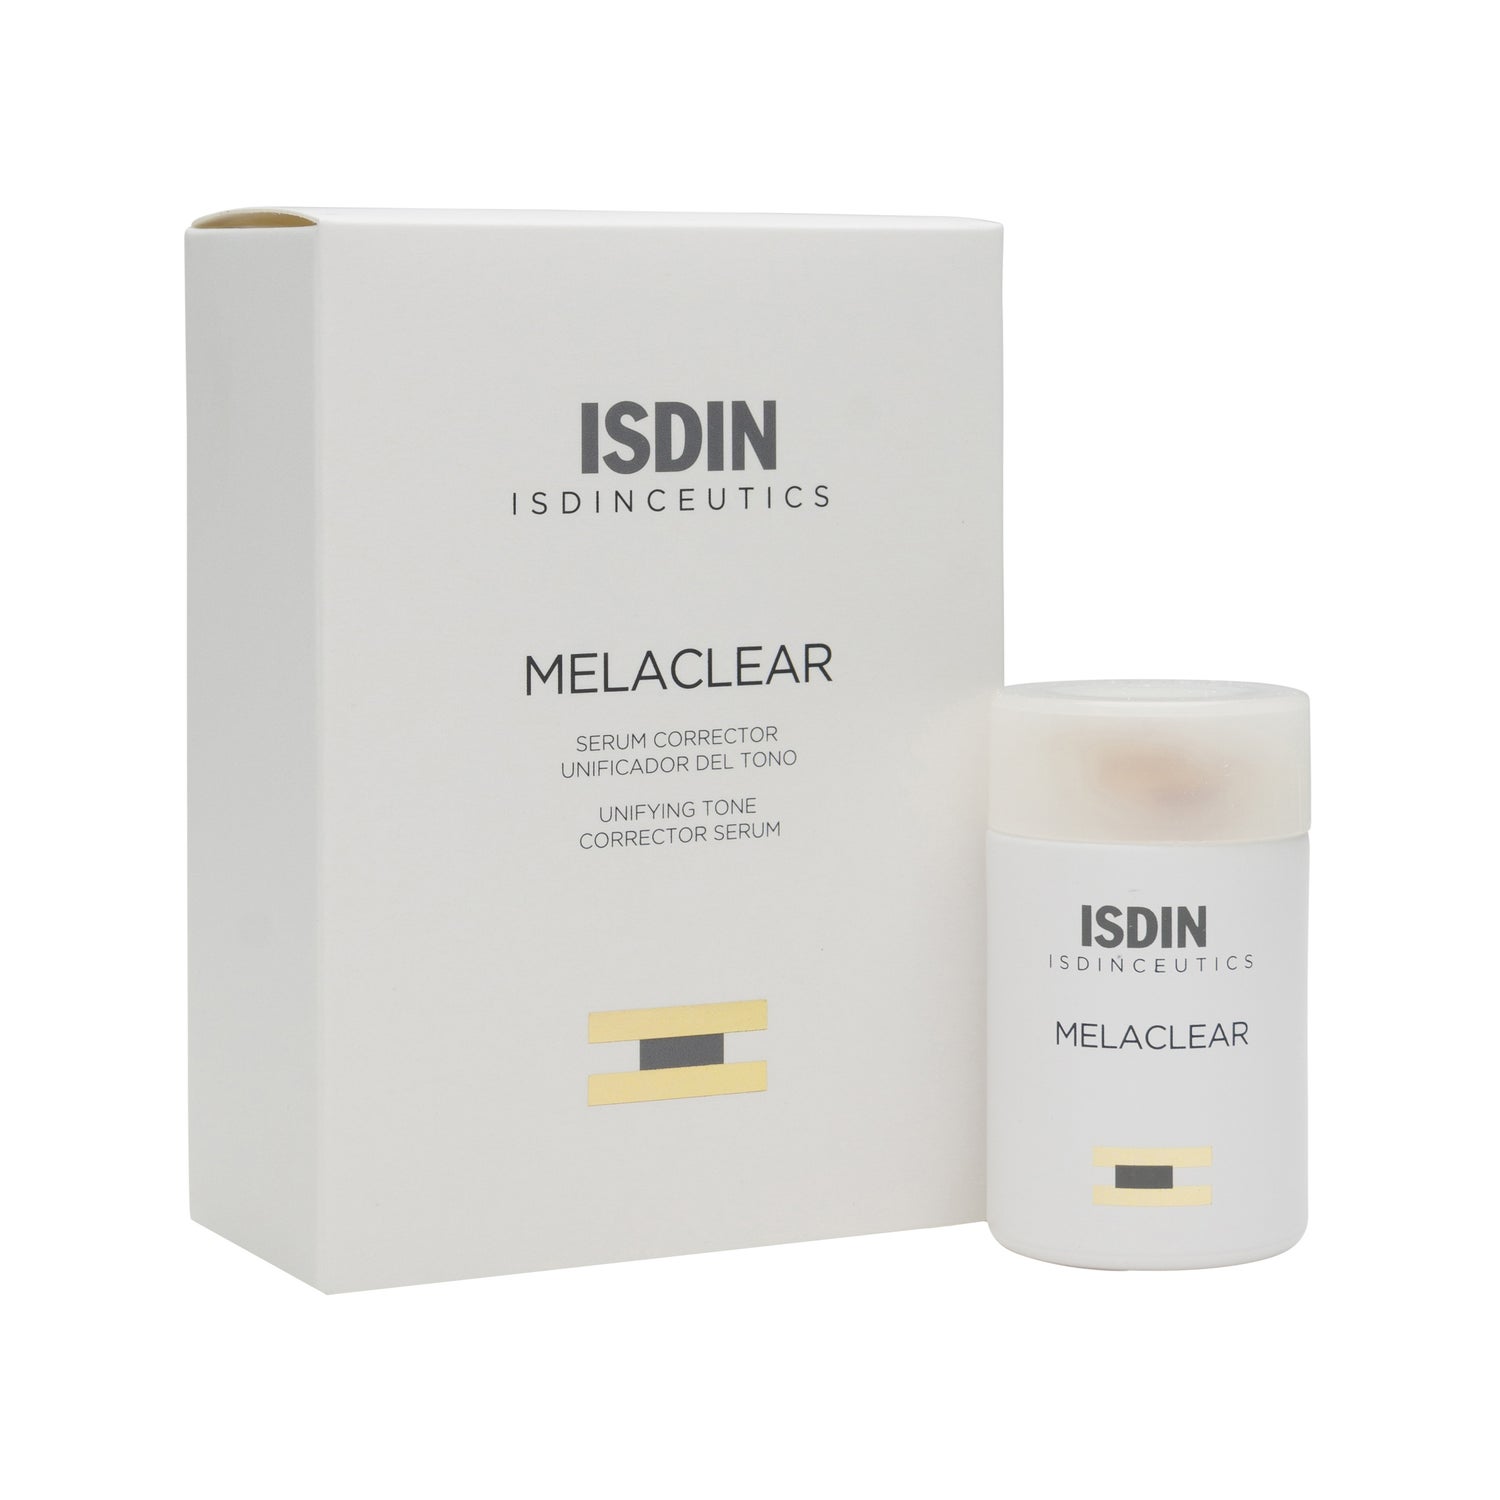 isdinceutics melaclear s rum 15ml